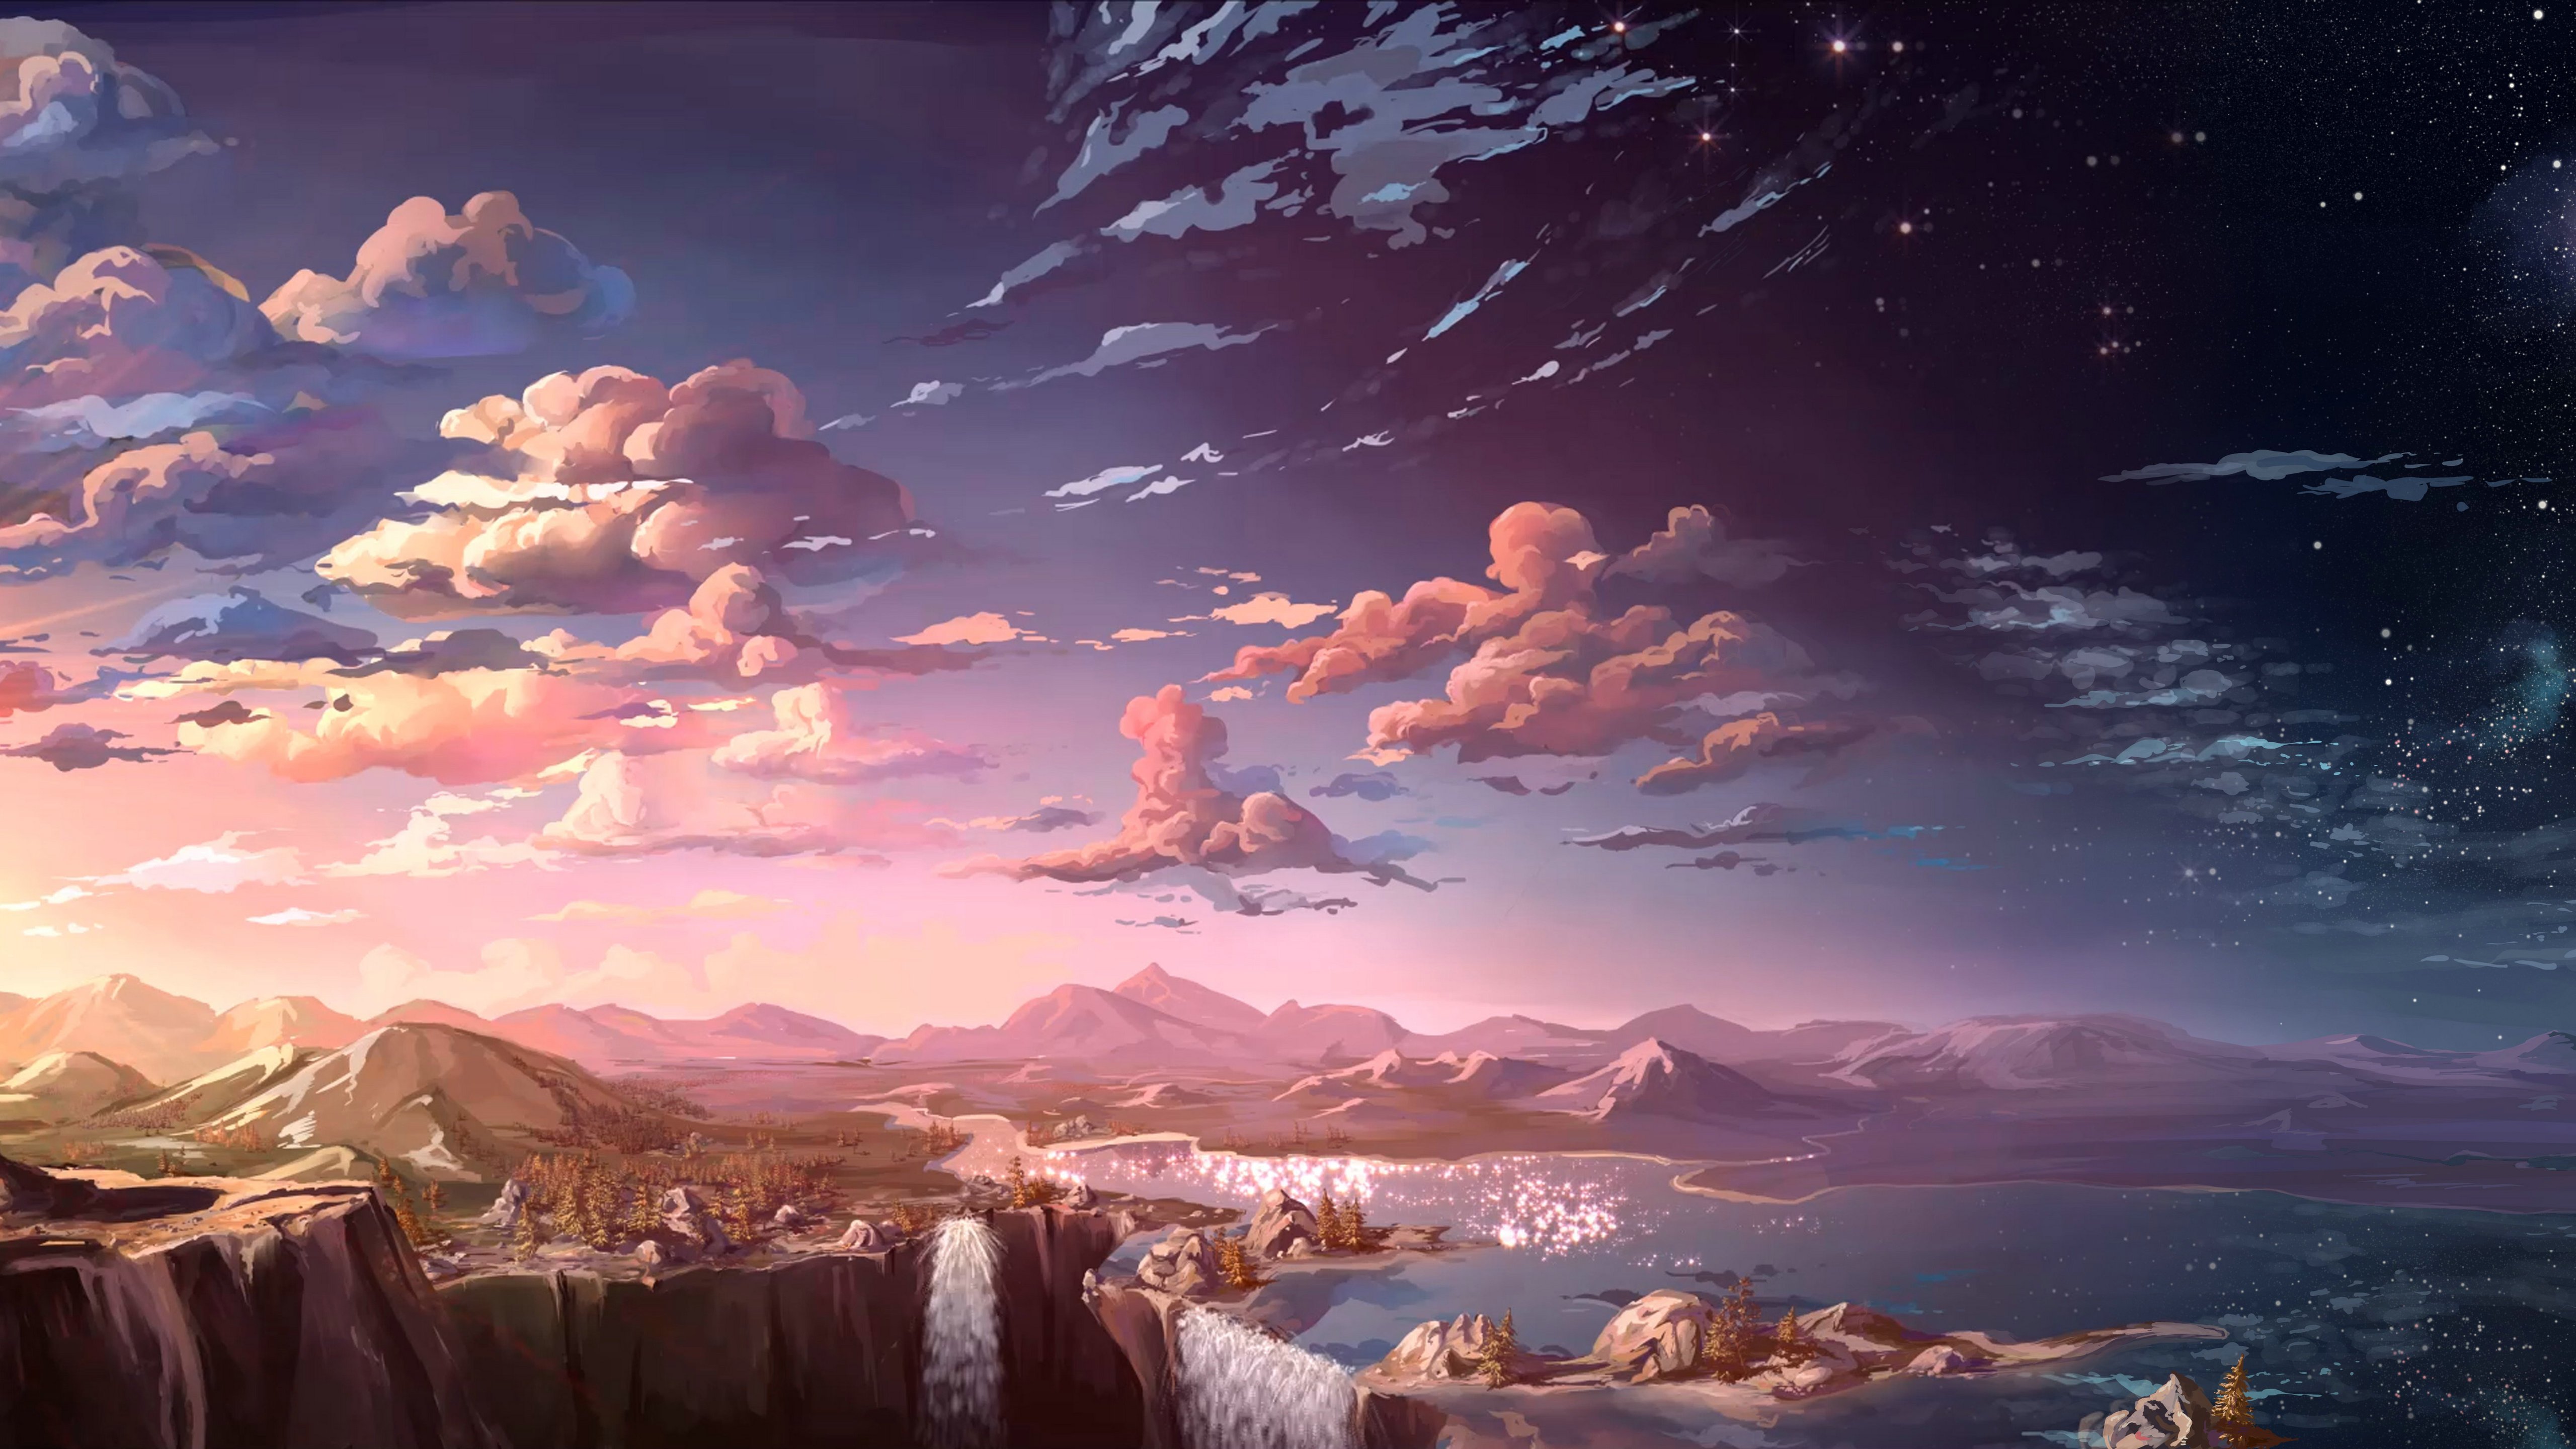 Anime Landscape Waterfall Cloud 5k, HD Anime, 4k Wallpaper